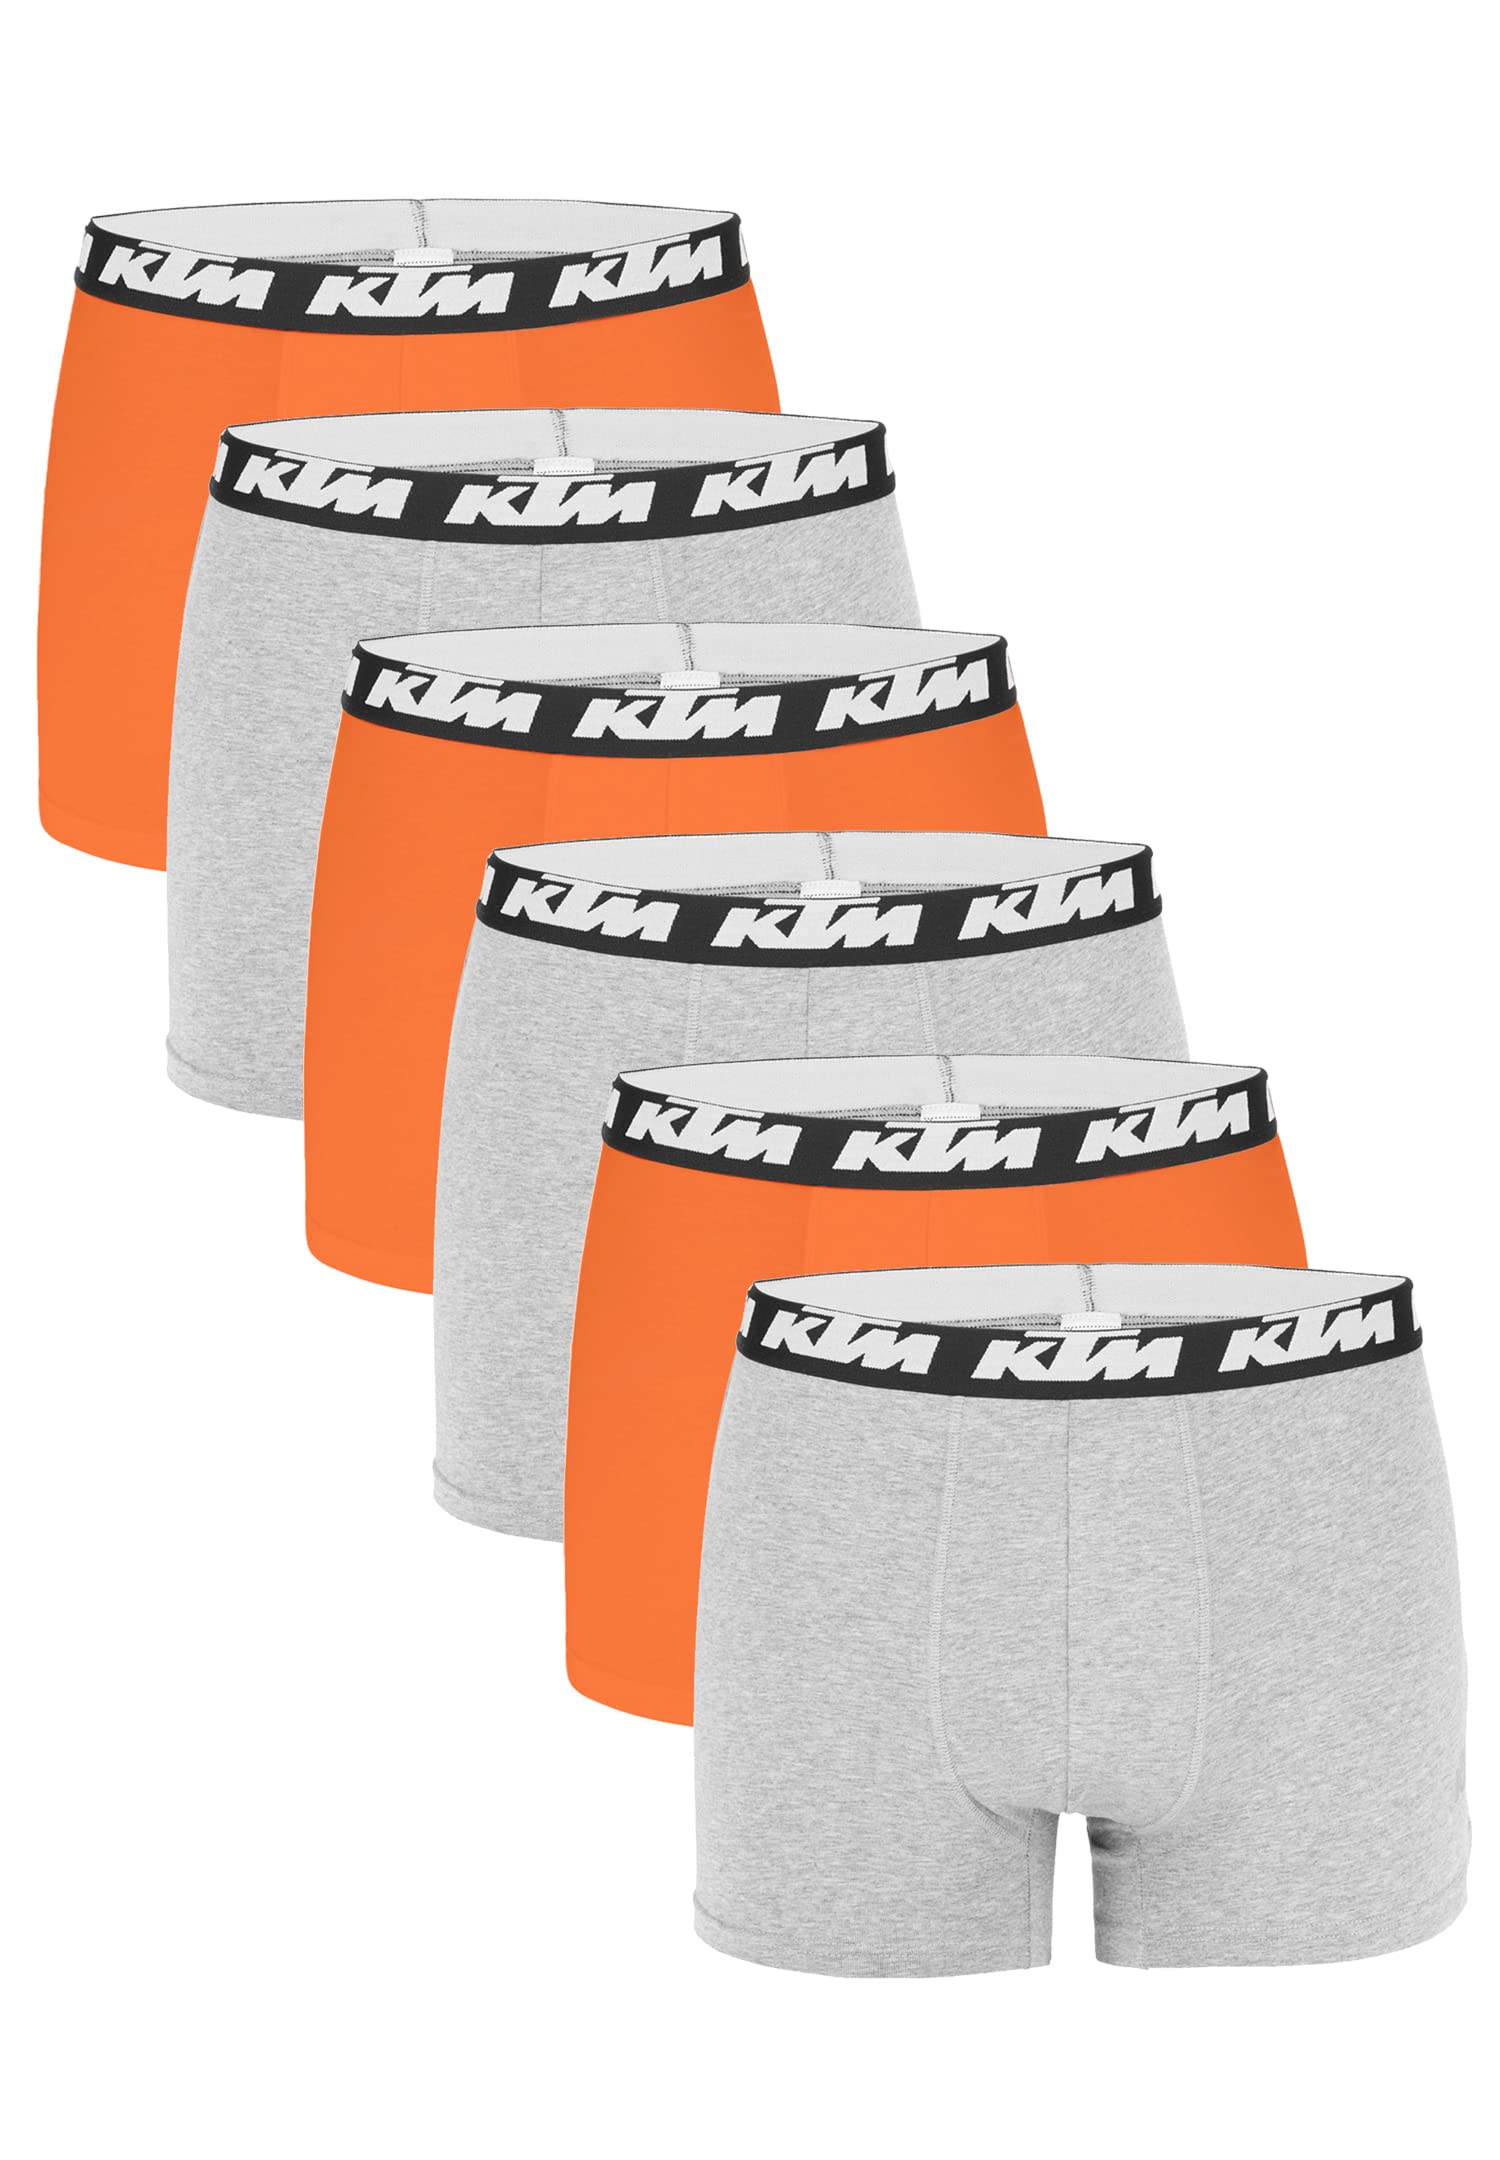 KTM by Freegun Boxershorts für Herren Unterwäsche Pant Men´s Boxer 6 er Pack, Farbe:Light Grey / Orange, Bekleidungsgröße:XL